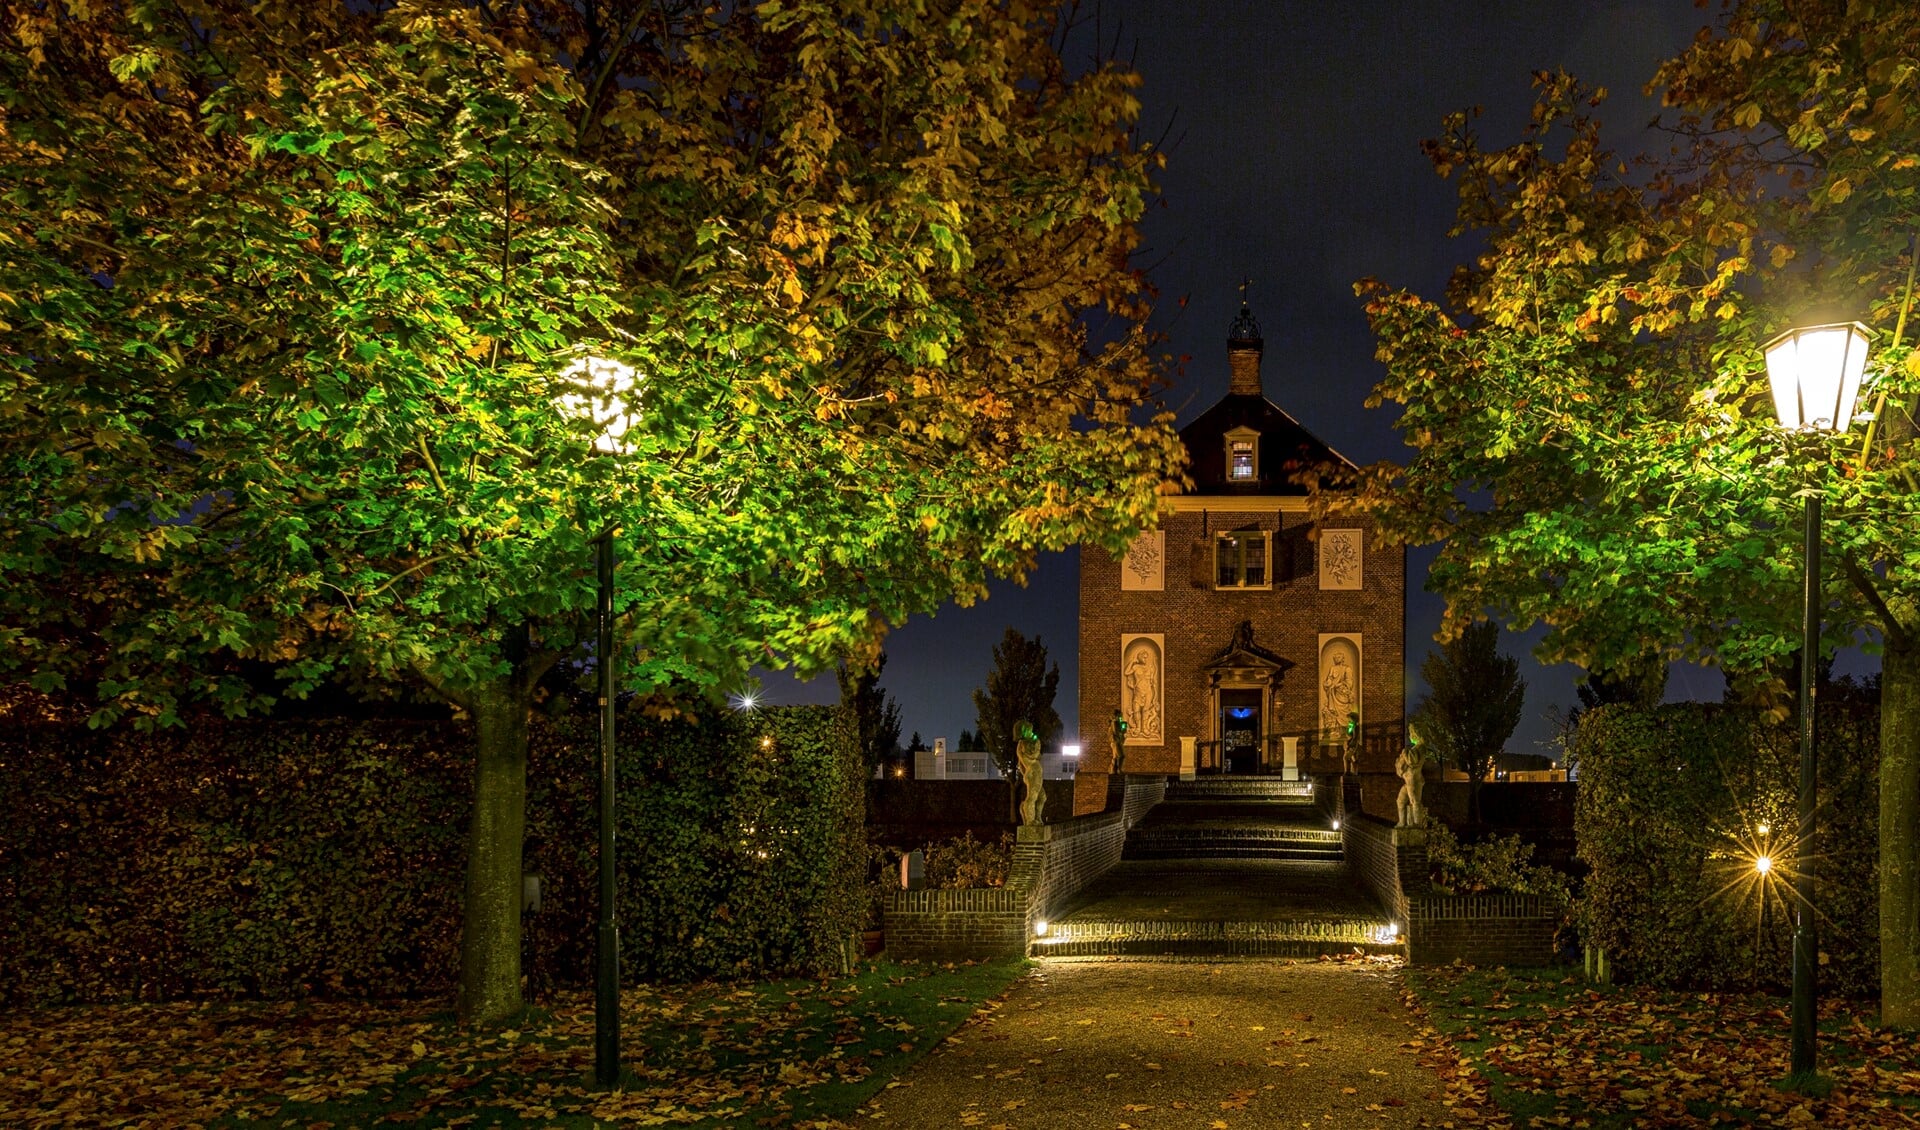 Op Huygens' Hofwijck is de tuin sprookjesachtig verlicht tijdens de museumnacht. (Foto: Charles Groeneveld)